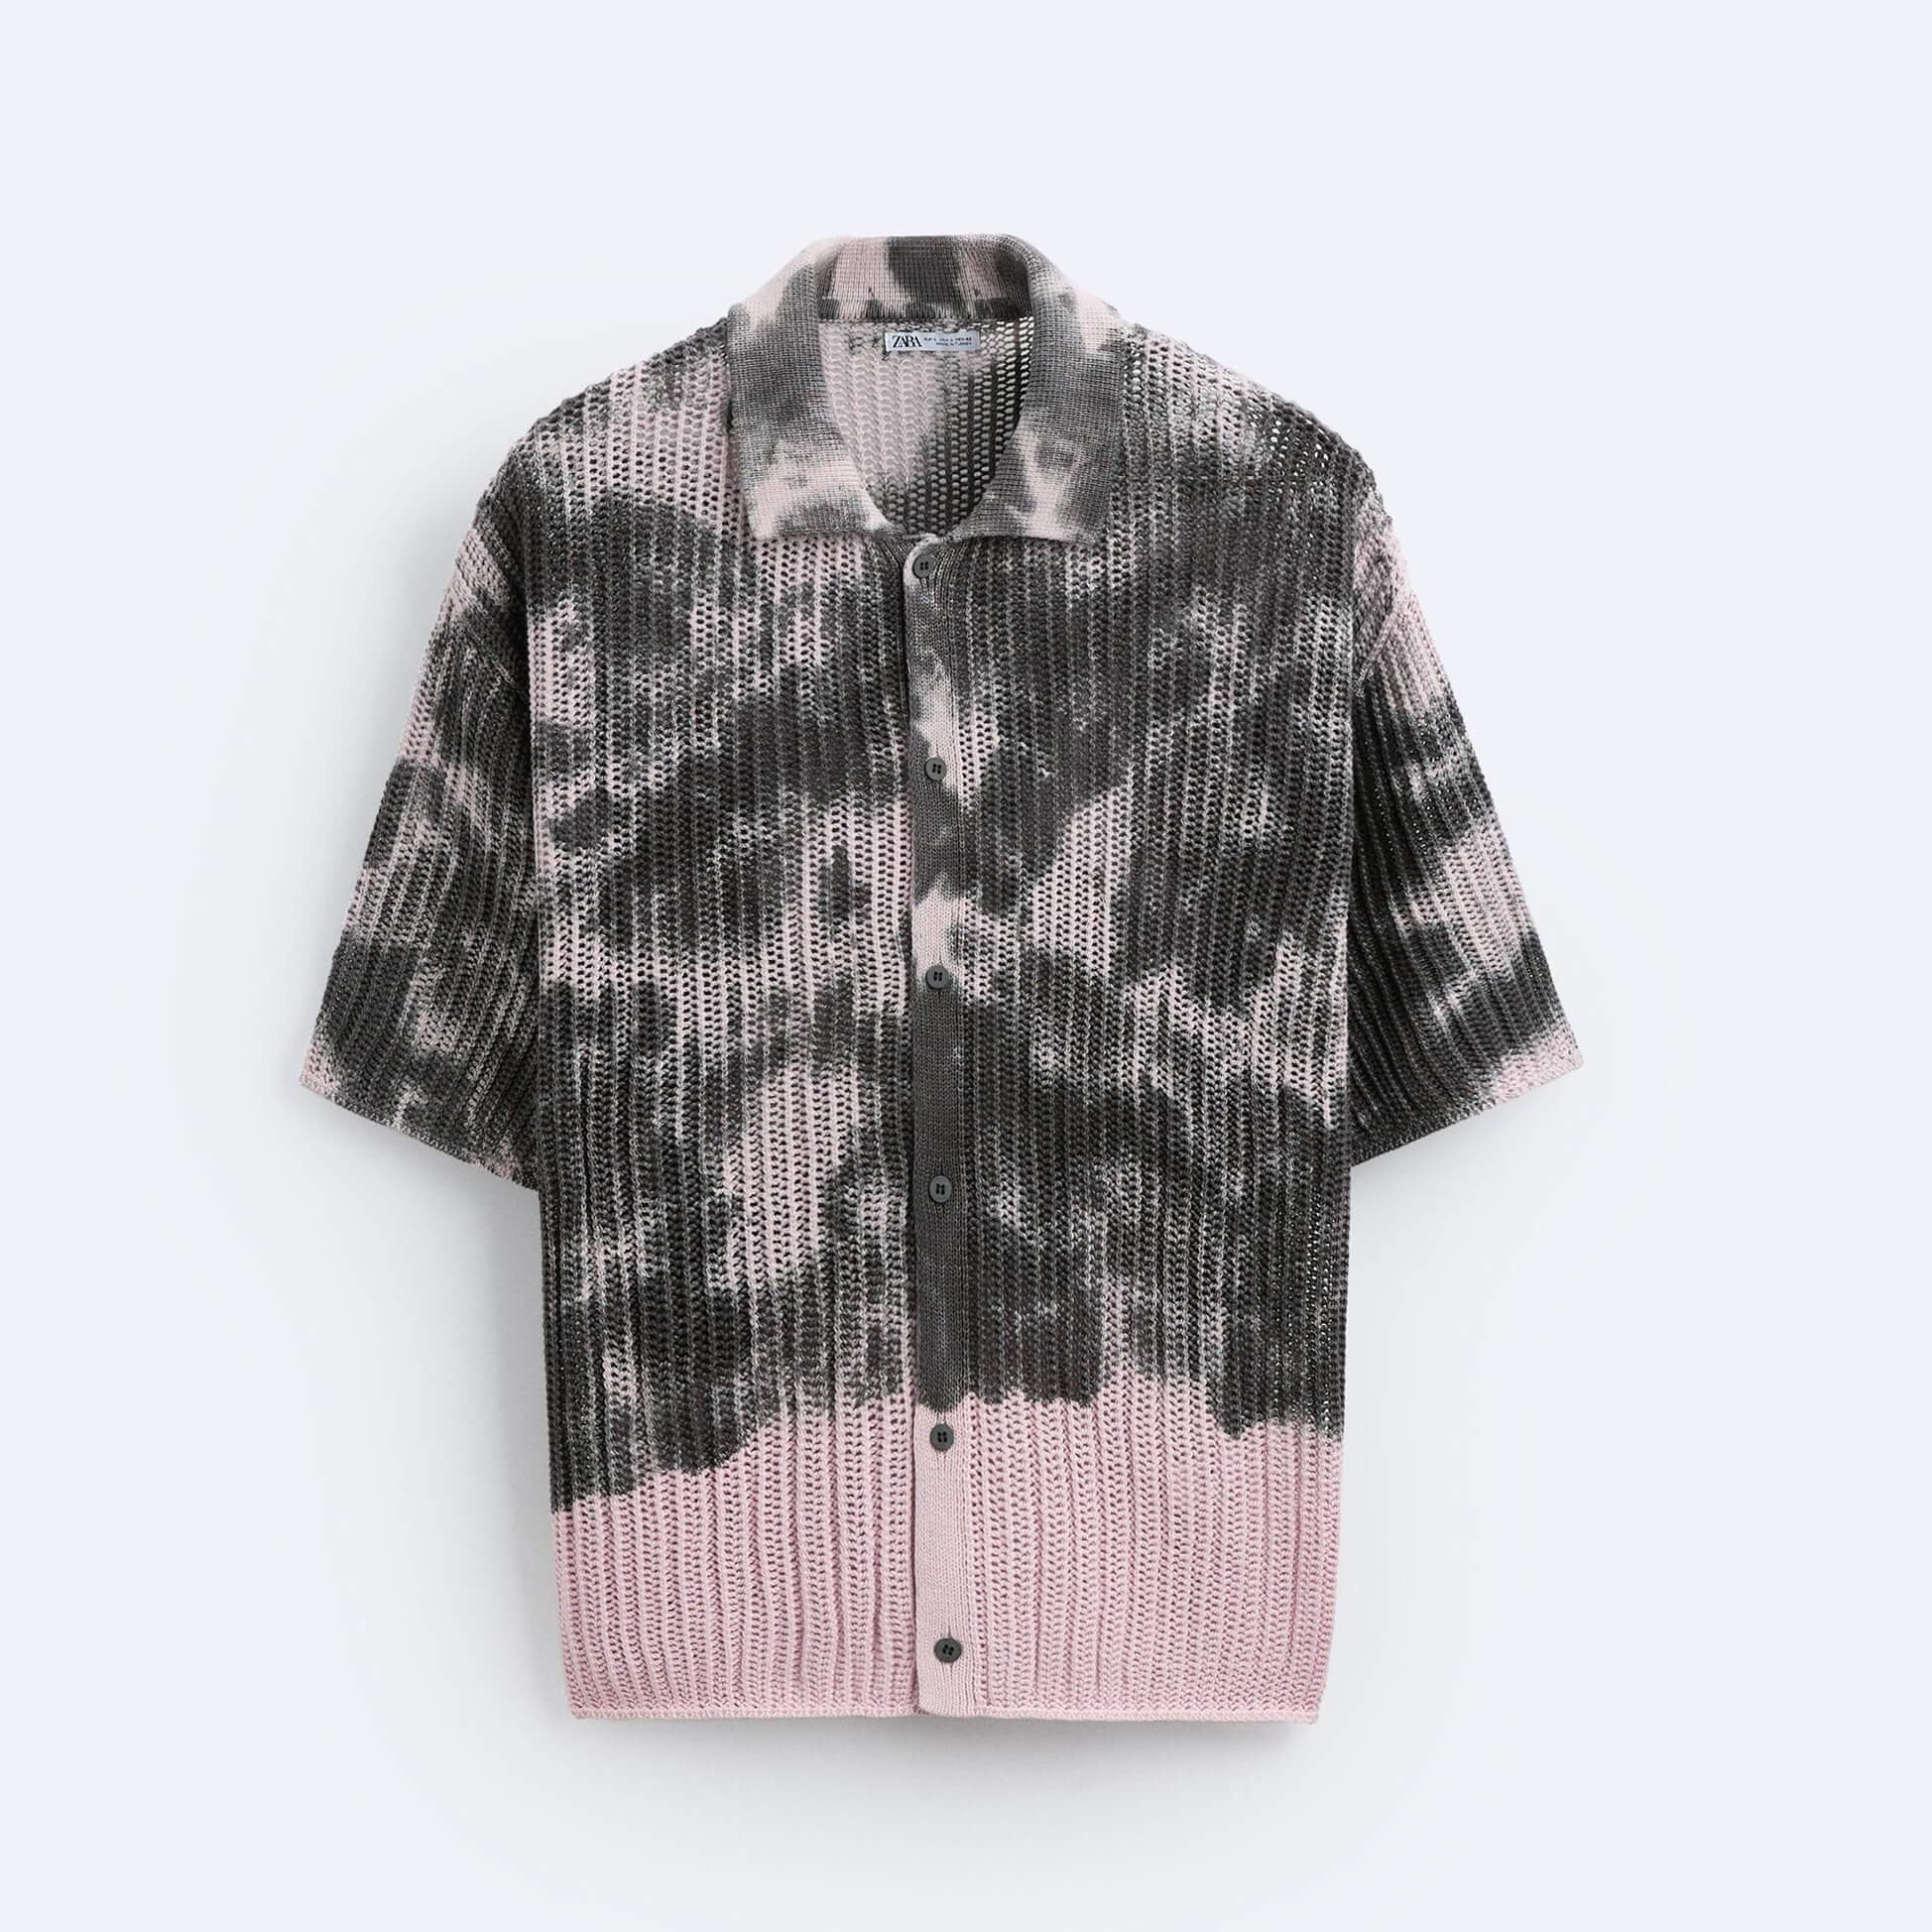 Рубашка Zara Tie-dye Print Knit, серый/розовый рубашка с принтом tie dye zara мультиколор